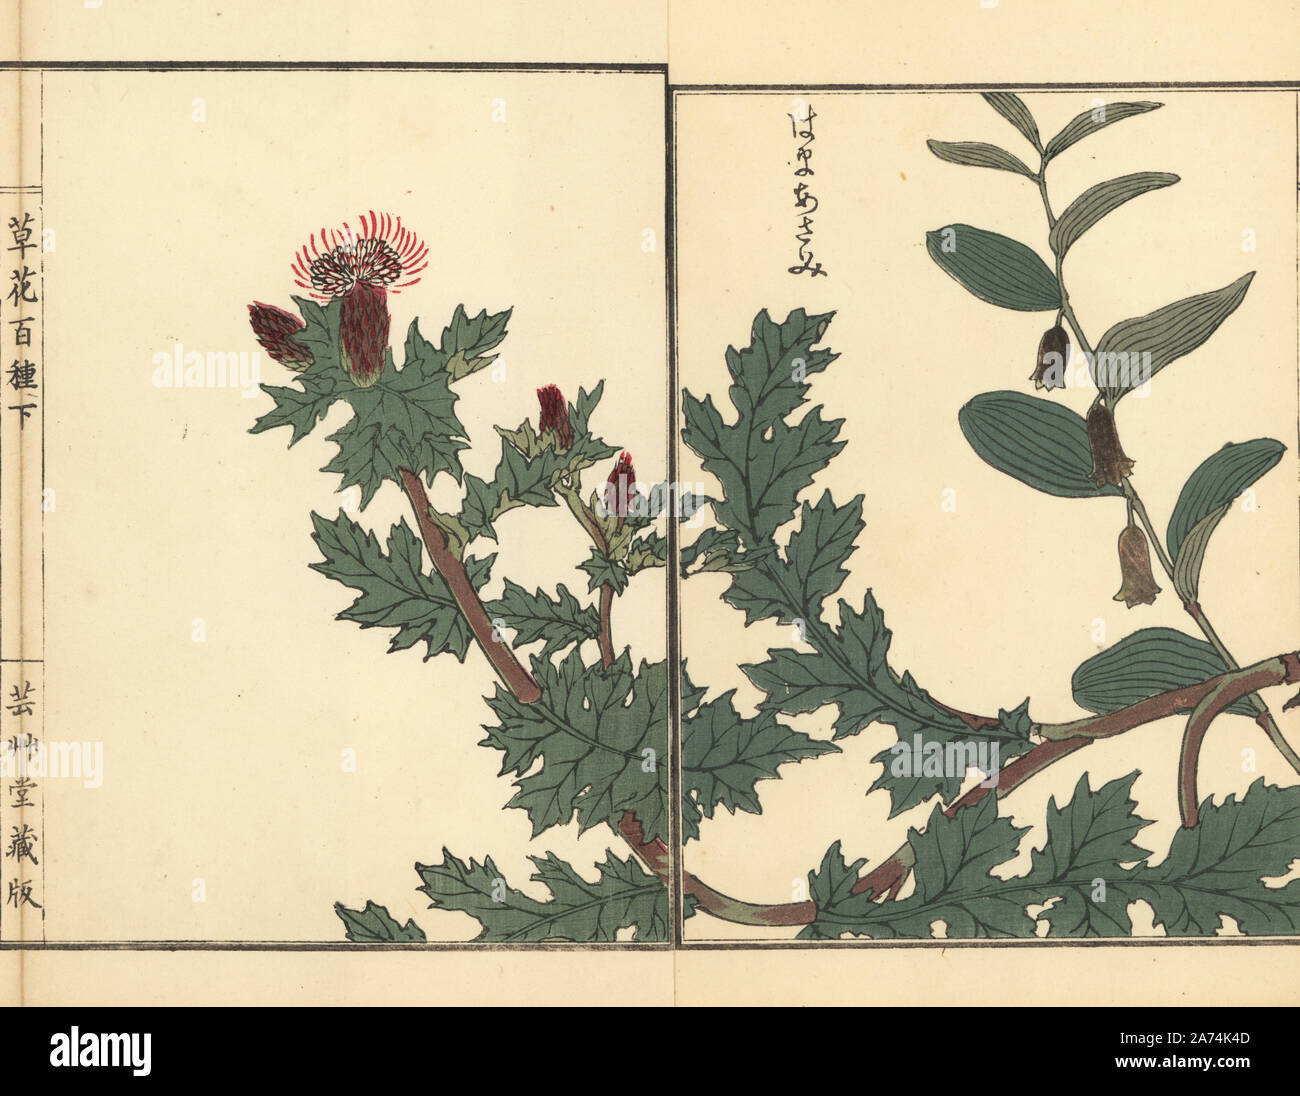 Hama azami or beach thistle, Cirsium maritimum Makino. Handcoloured woodblock print by Kono Bairei from Kusa Bana Hyakushu (One Hundred Varieties of Flowers), Tokyo, Yamada, 1901. Stock Photo